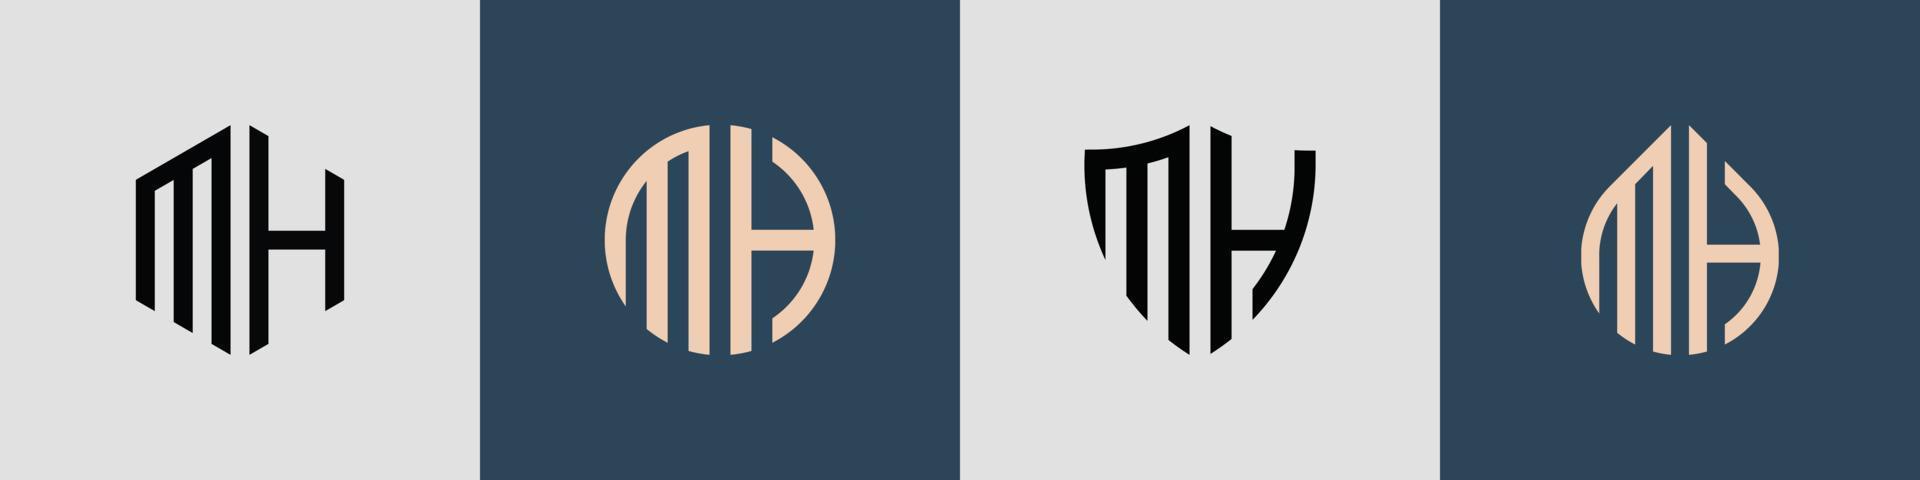 kreative einfache anfangsbuchstaben mh-logo-designs-bündel. vektor